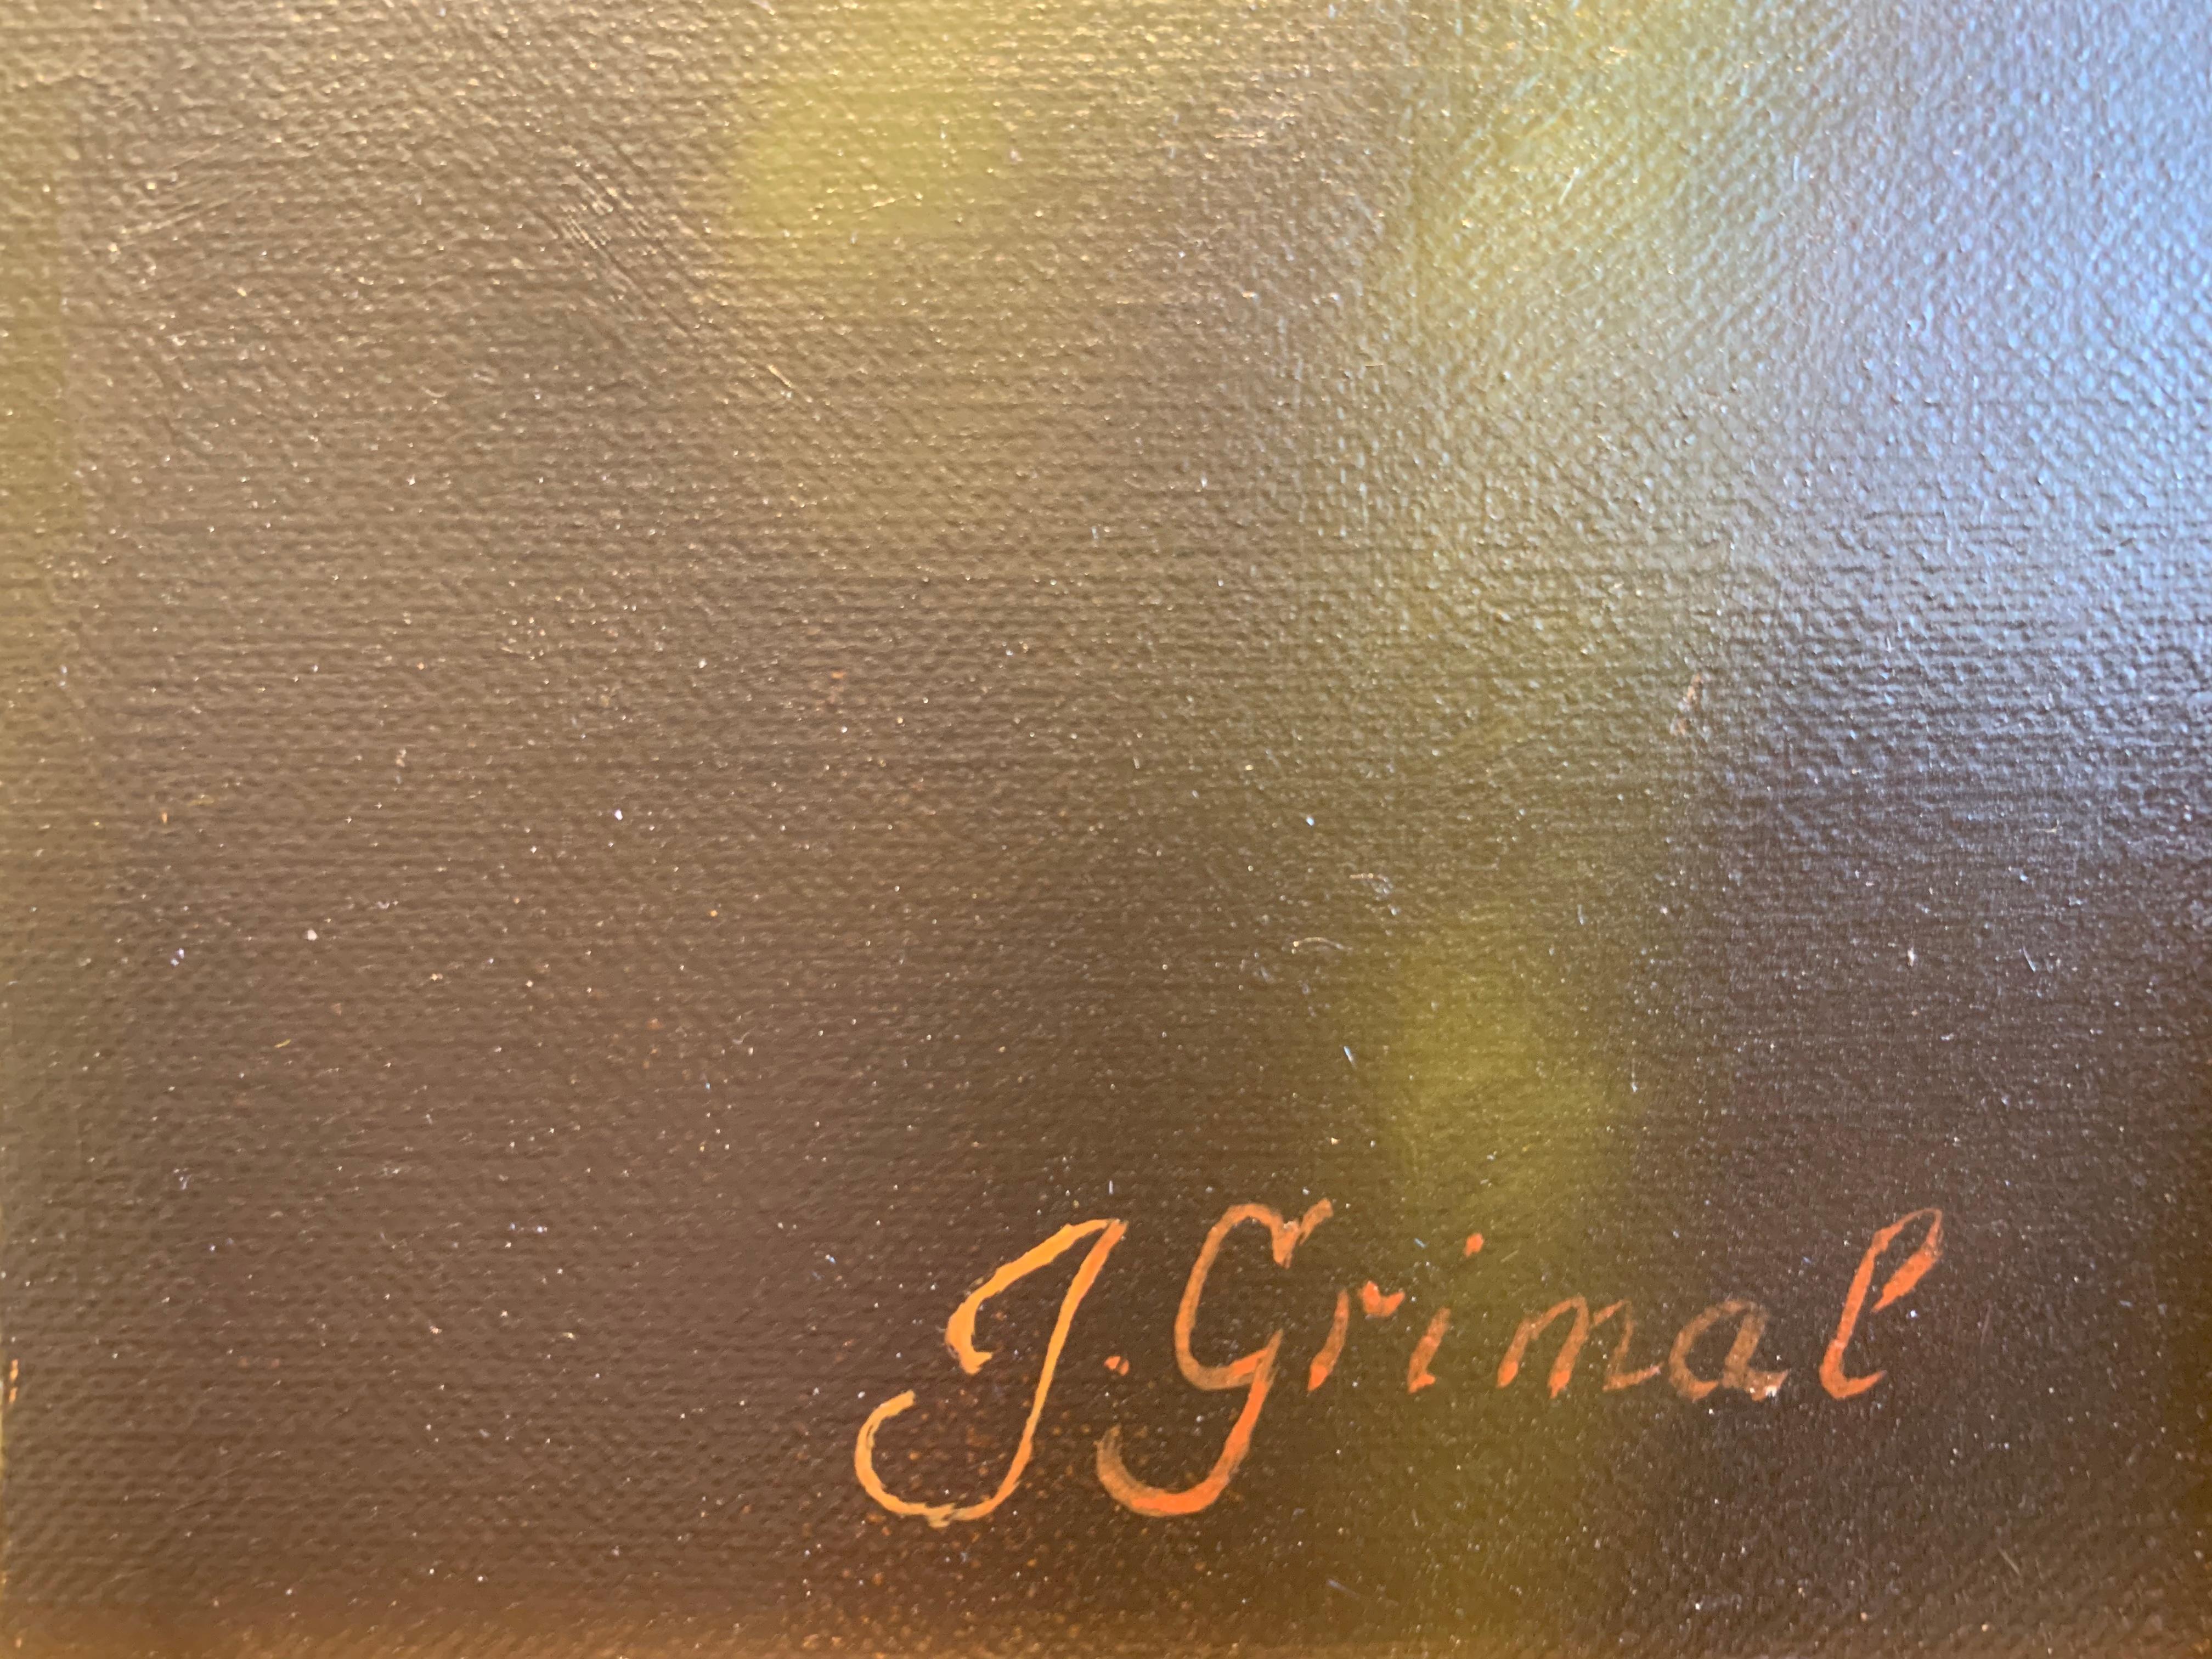 In Anlehnung an die niederländischen Meister schuf Jean Grimal (1942-1998) dieses atemberaubende Stillleben. Der Einsatz von Hell-Dunkel-Kontrasten in dem grünen Seidentuch, das auf dem Holztisch drapiert ist, ist wunderschön. Die fachmännisch